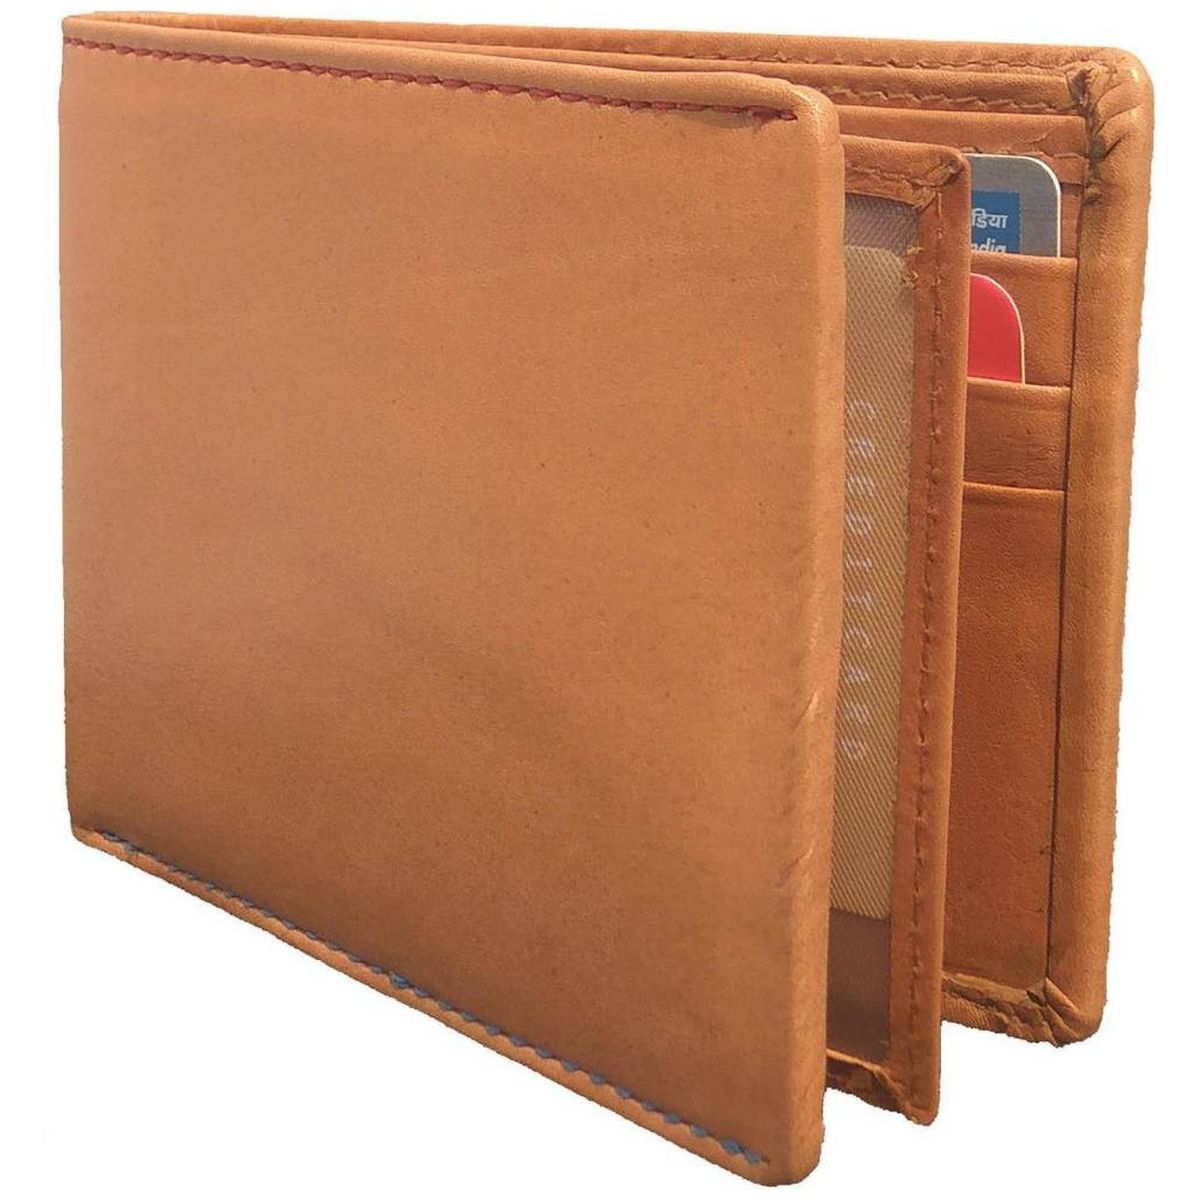 Debonair International Men Genuine Leather 10 Slots Wallet, DI934375, Brown